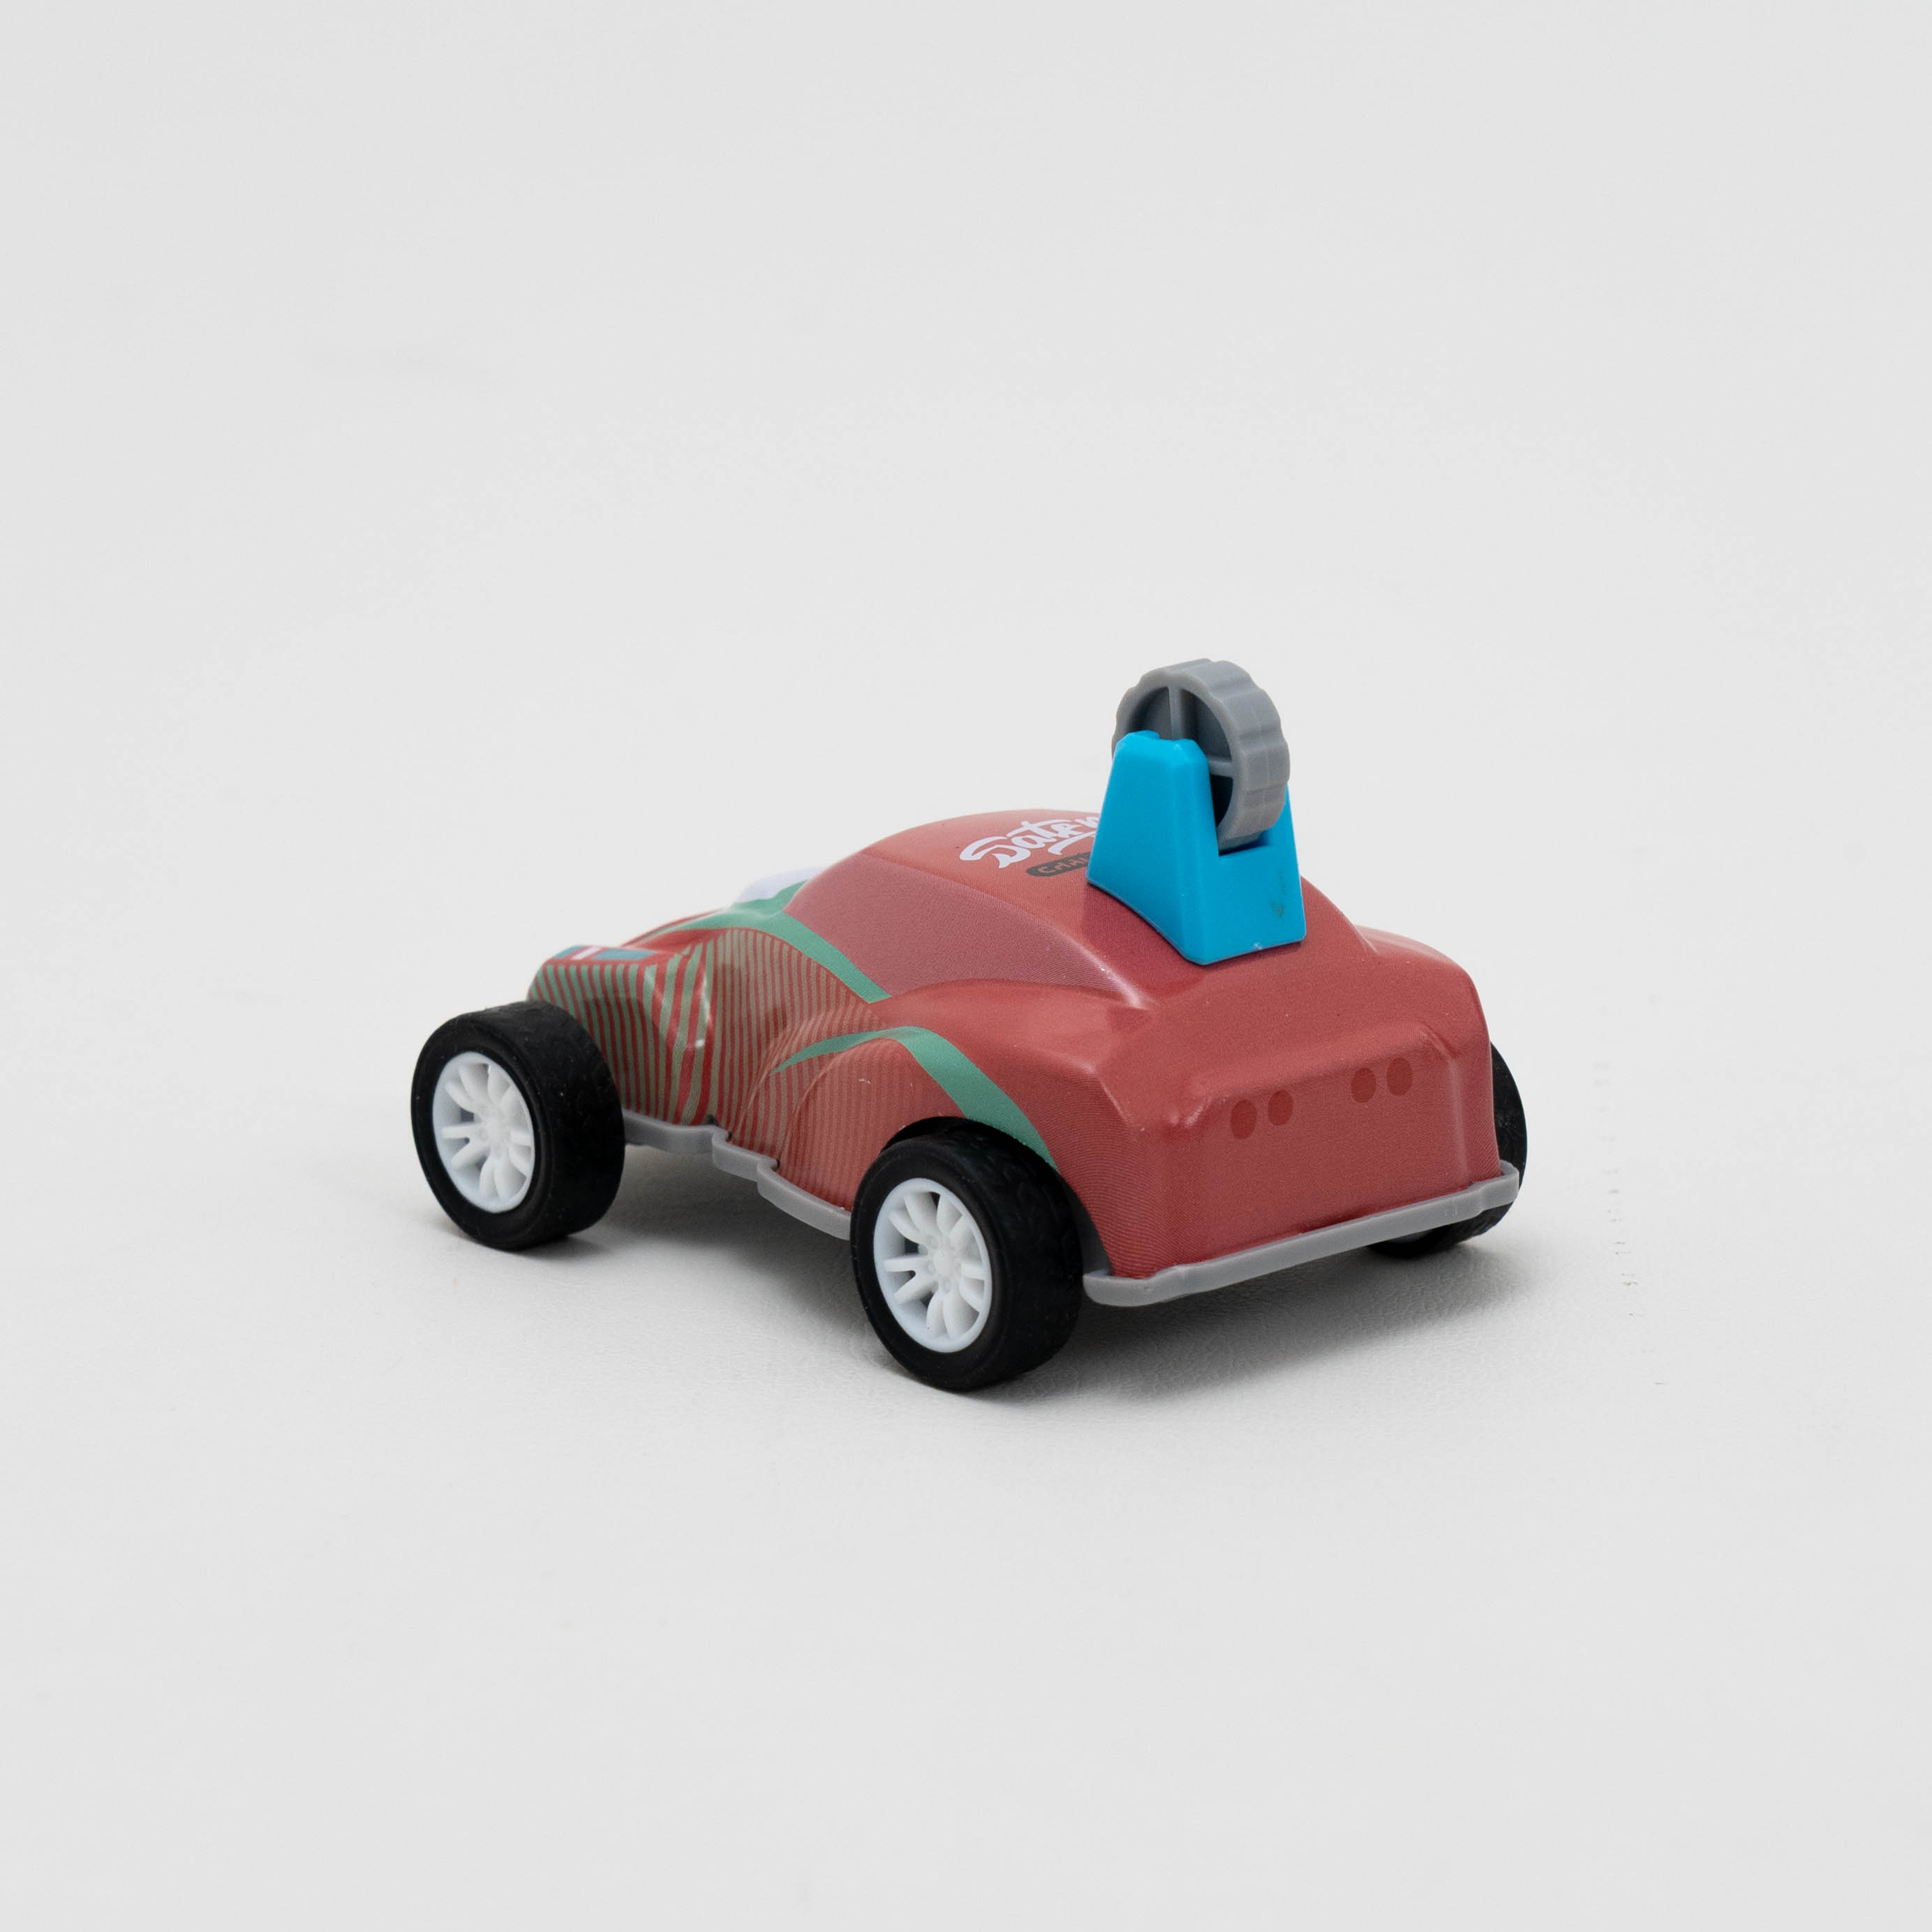 プルバック式の360度転げ回りの車おもちゃの4点セット｜リアルな色彩のコレクションアイテム！ランダムで発送させる|undefined